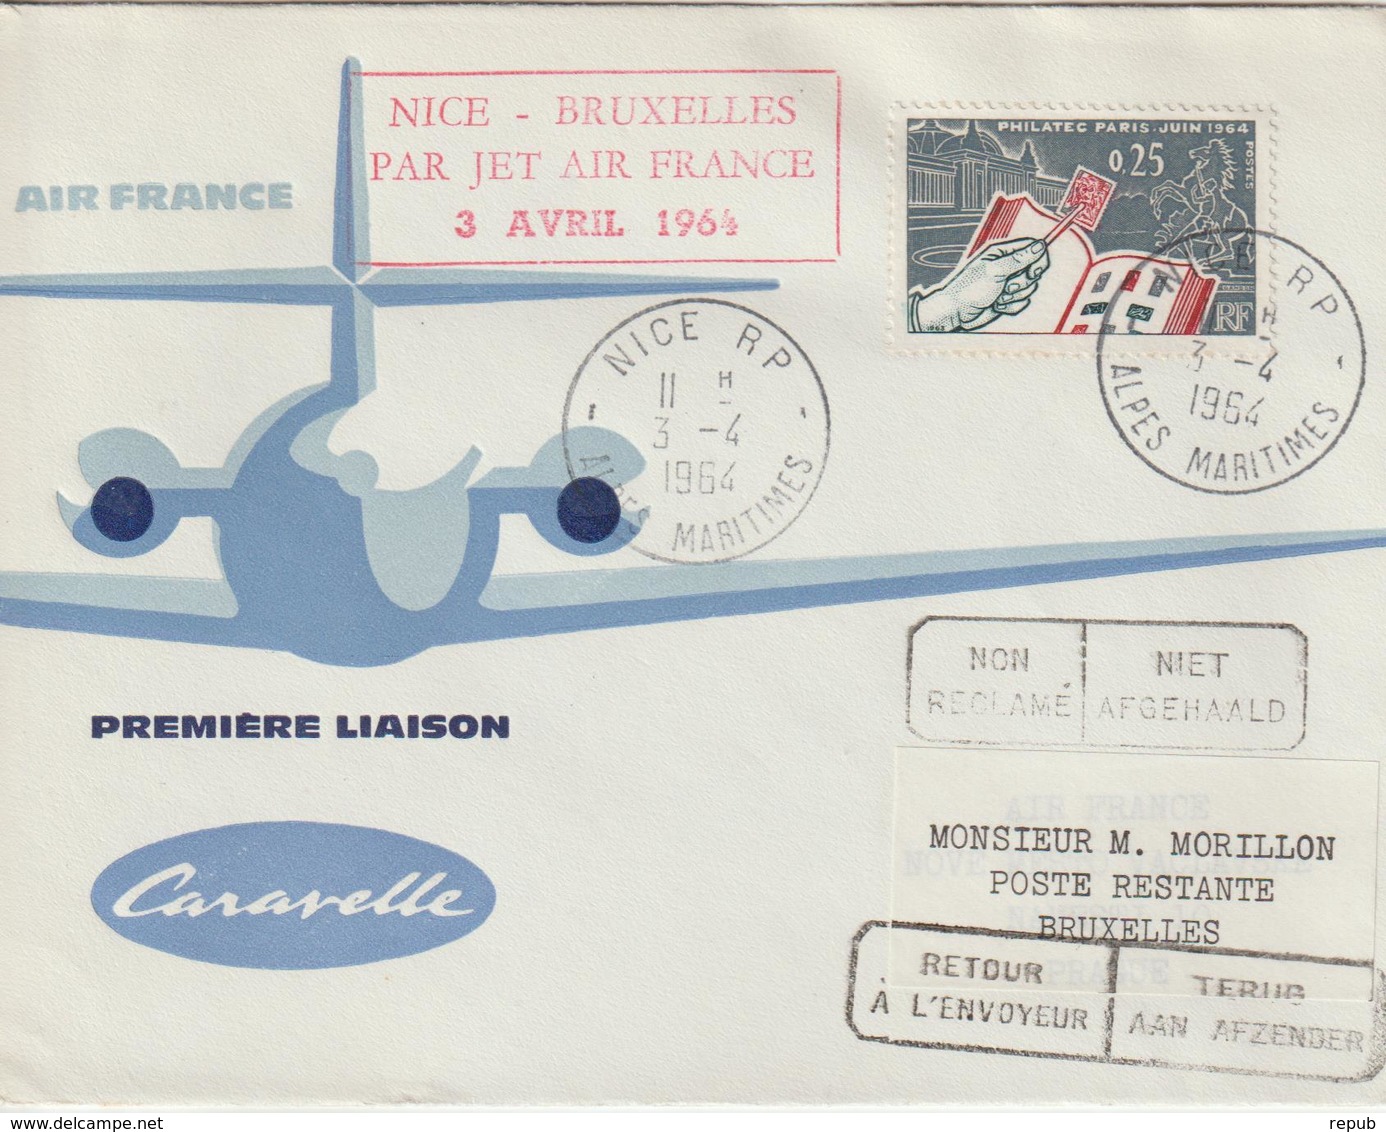 France 1964 Première Liaison Air France Nice Bruxelles - Primi Voli